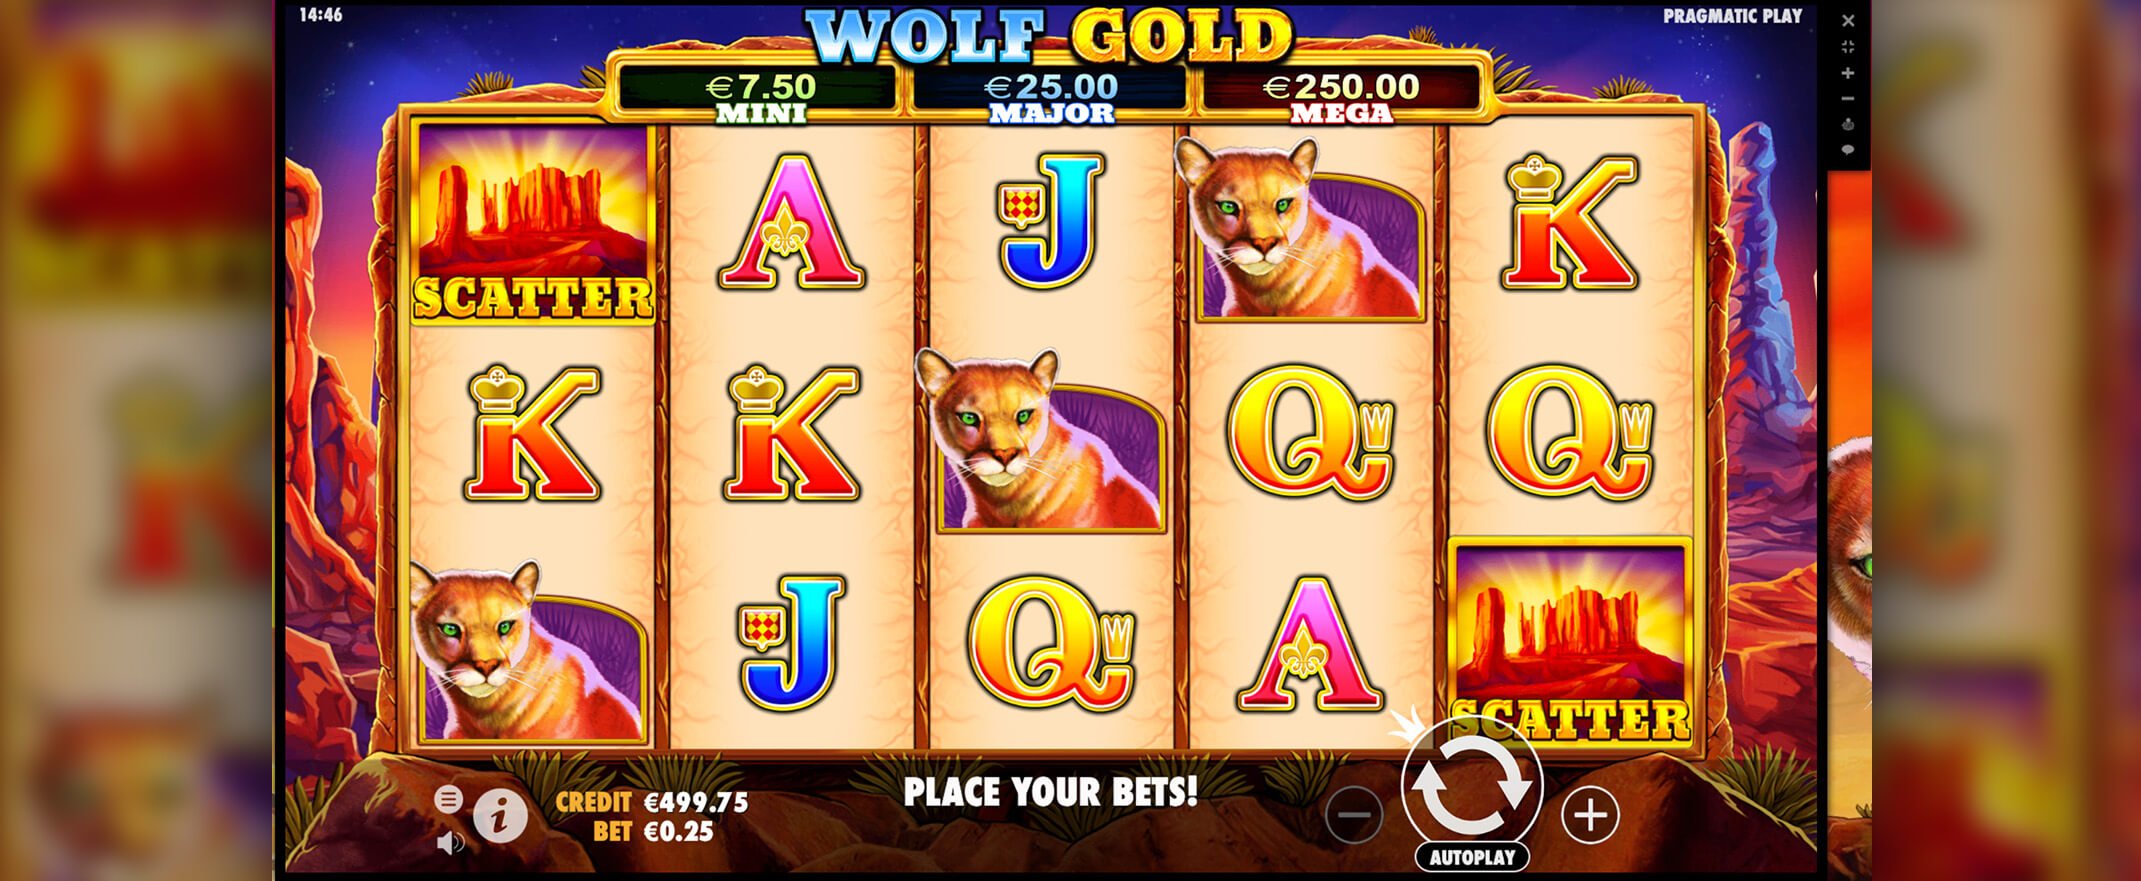 Wolf Gold Spielautomaten spielen